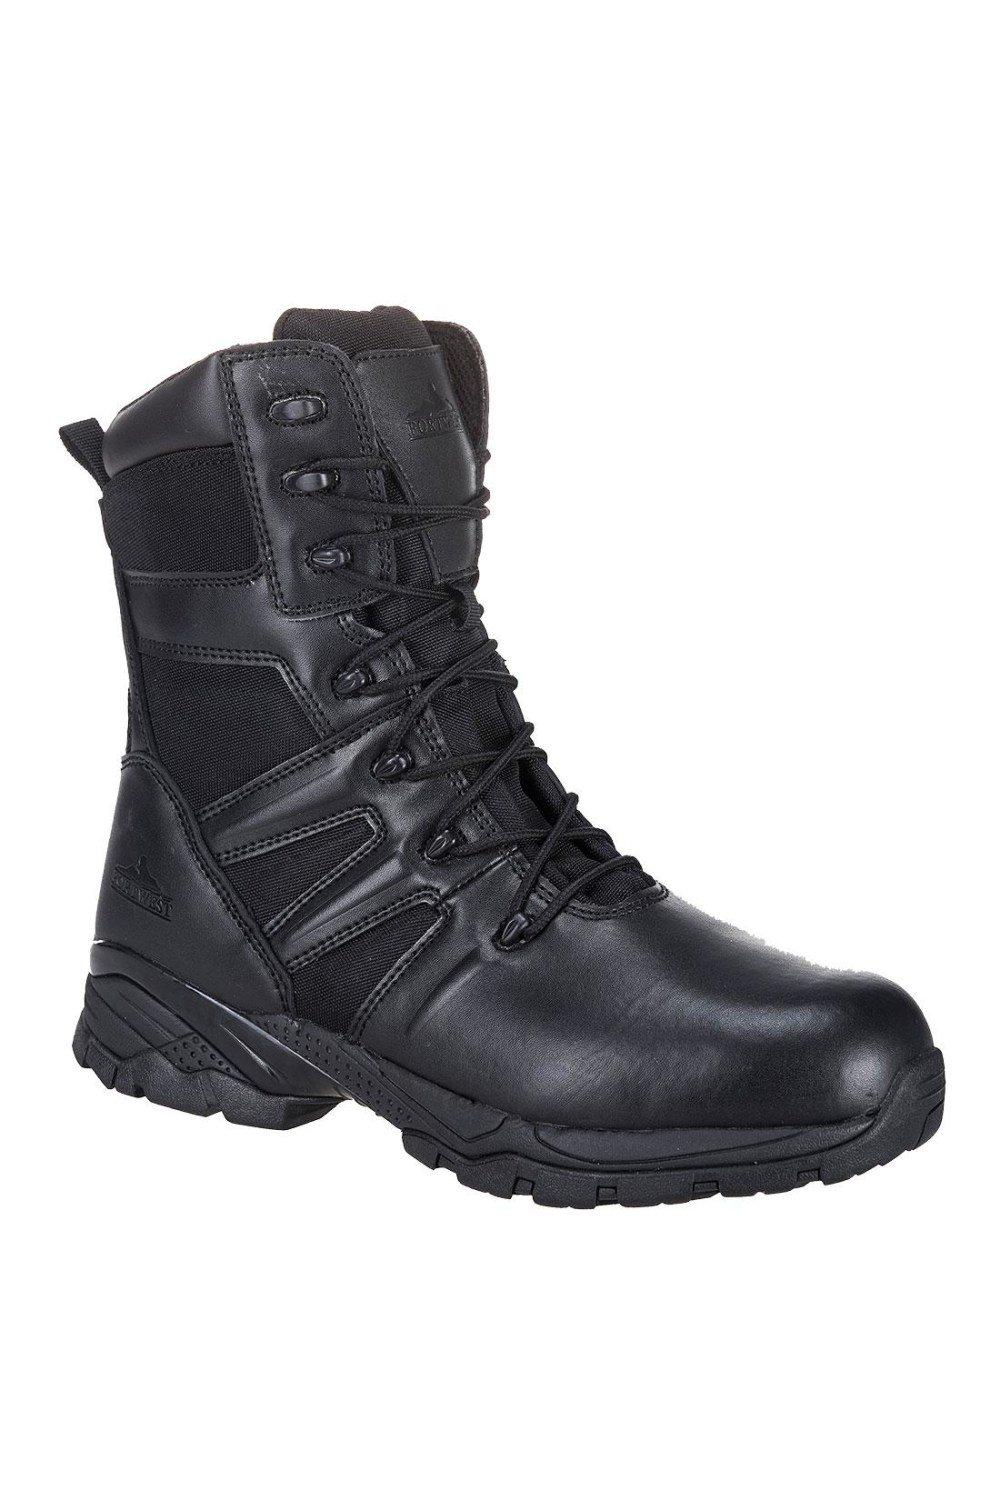 Защитные ботинки Steelite TaskForce Portwest, черный цена и фото